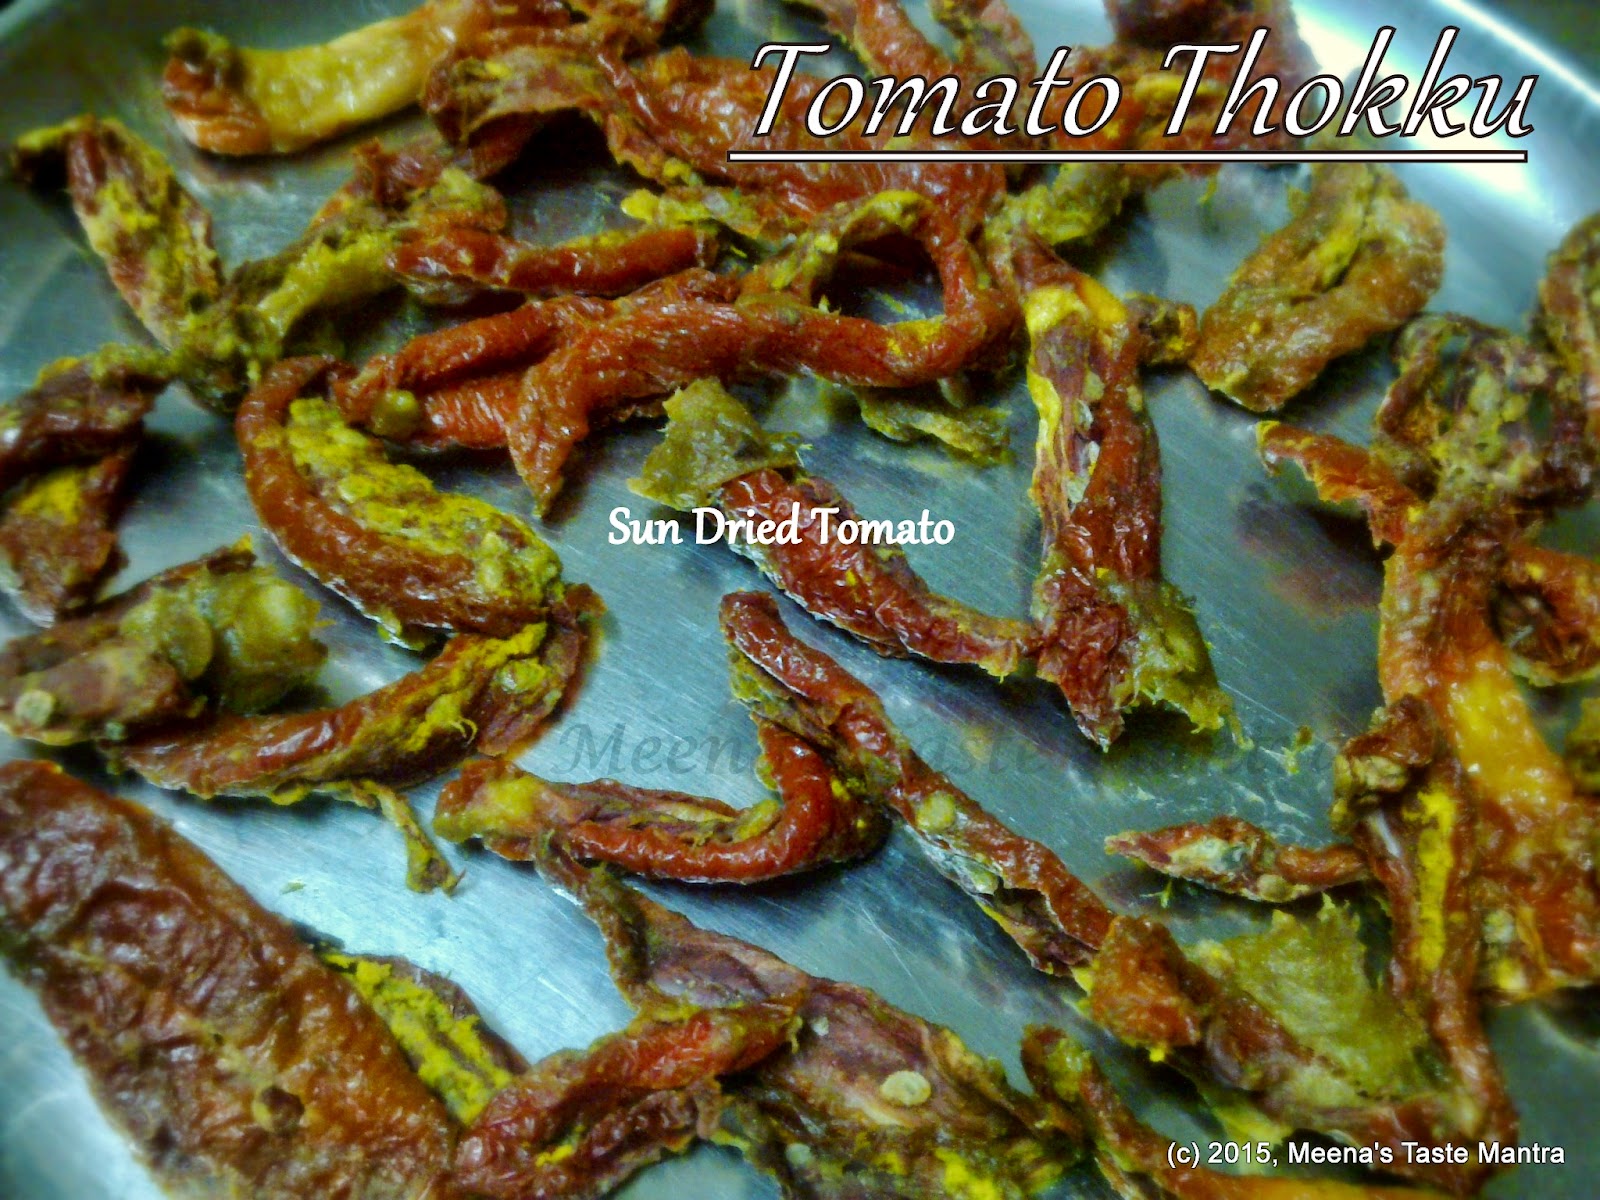 Tomato Thokku - Tomaotes sundried for 2 days